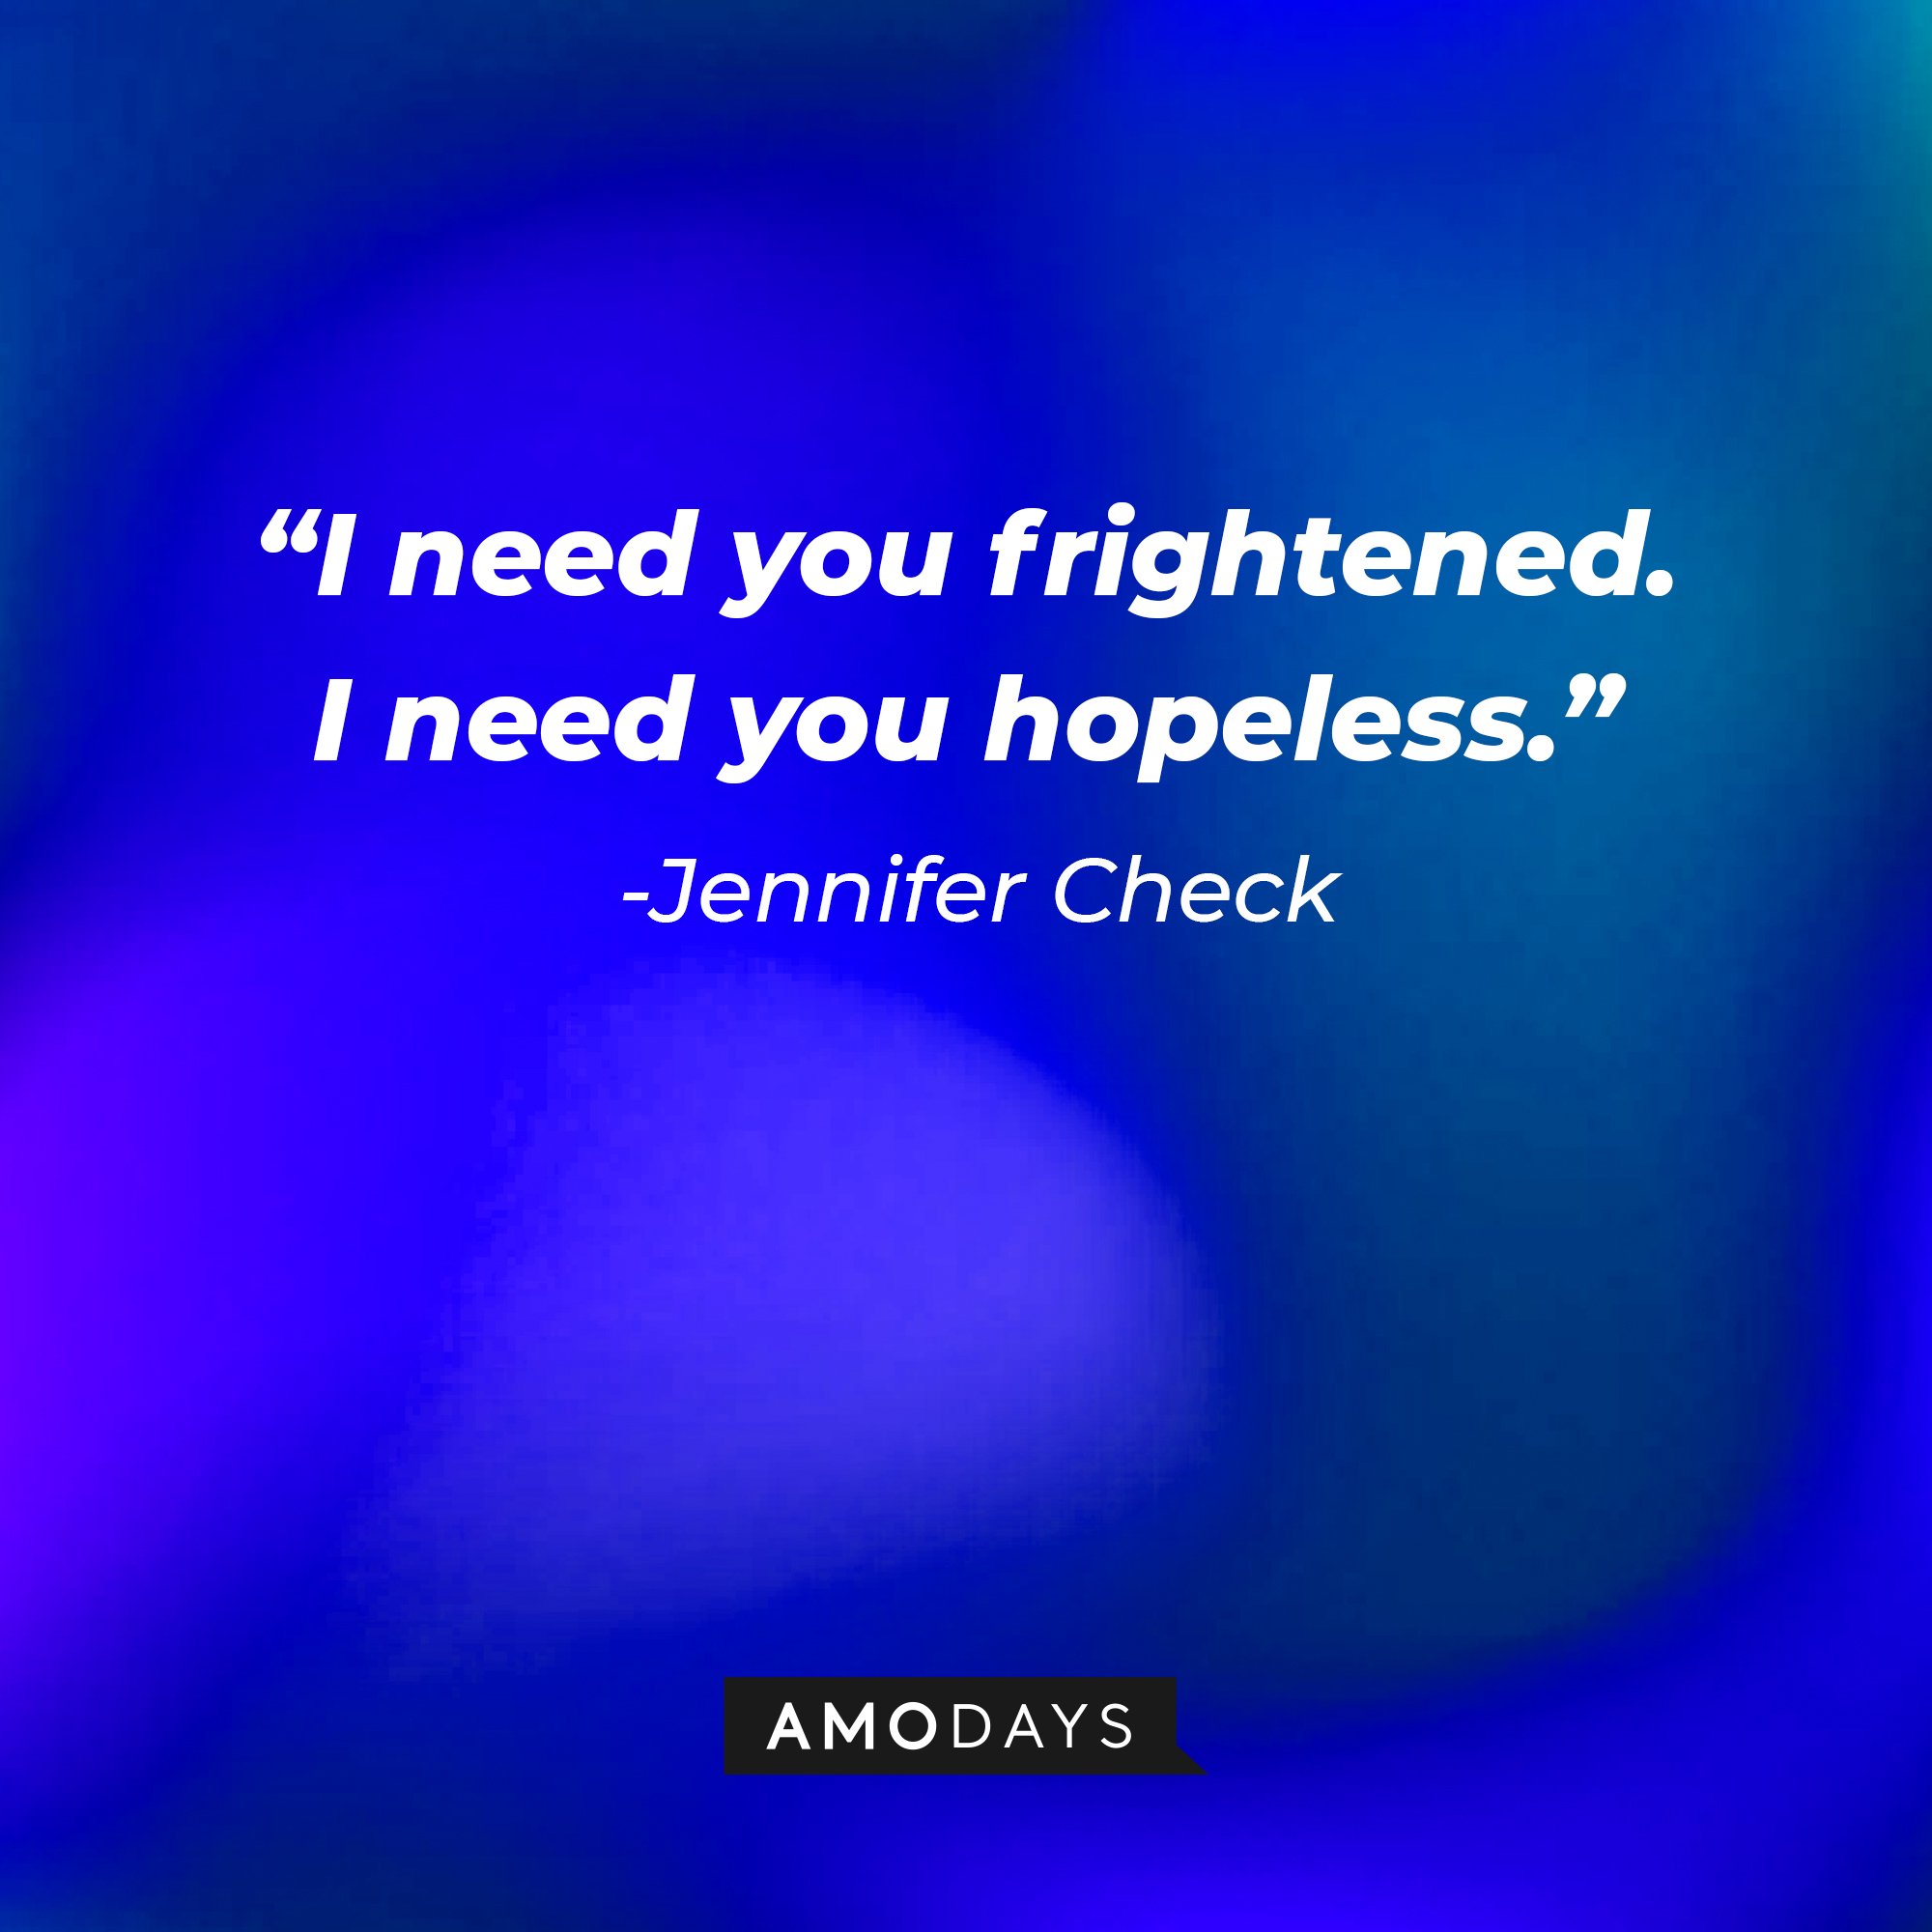 Jennifer Check’s quote: “I need you frightened. I need you hopeless.” |Image: AmoDays